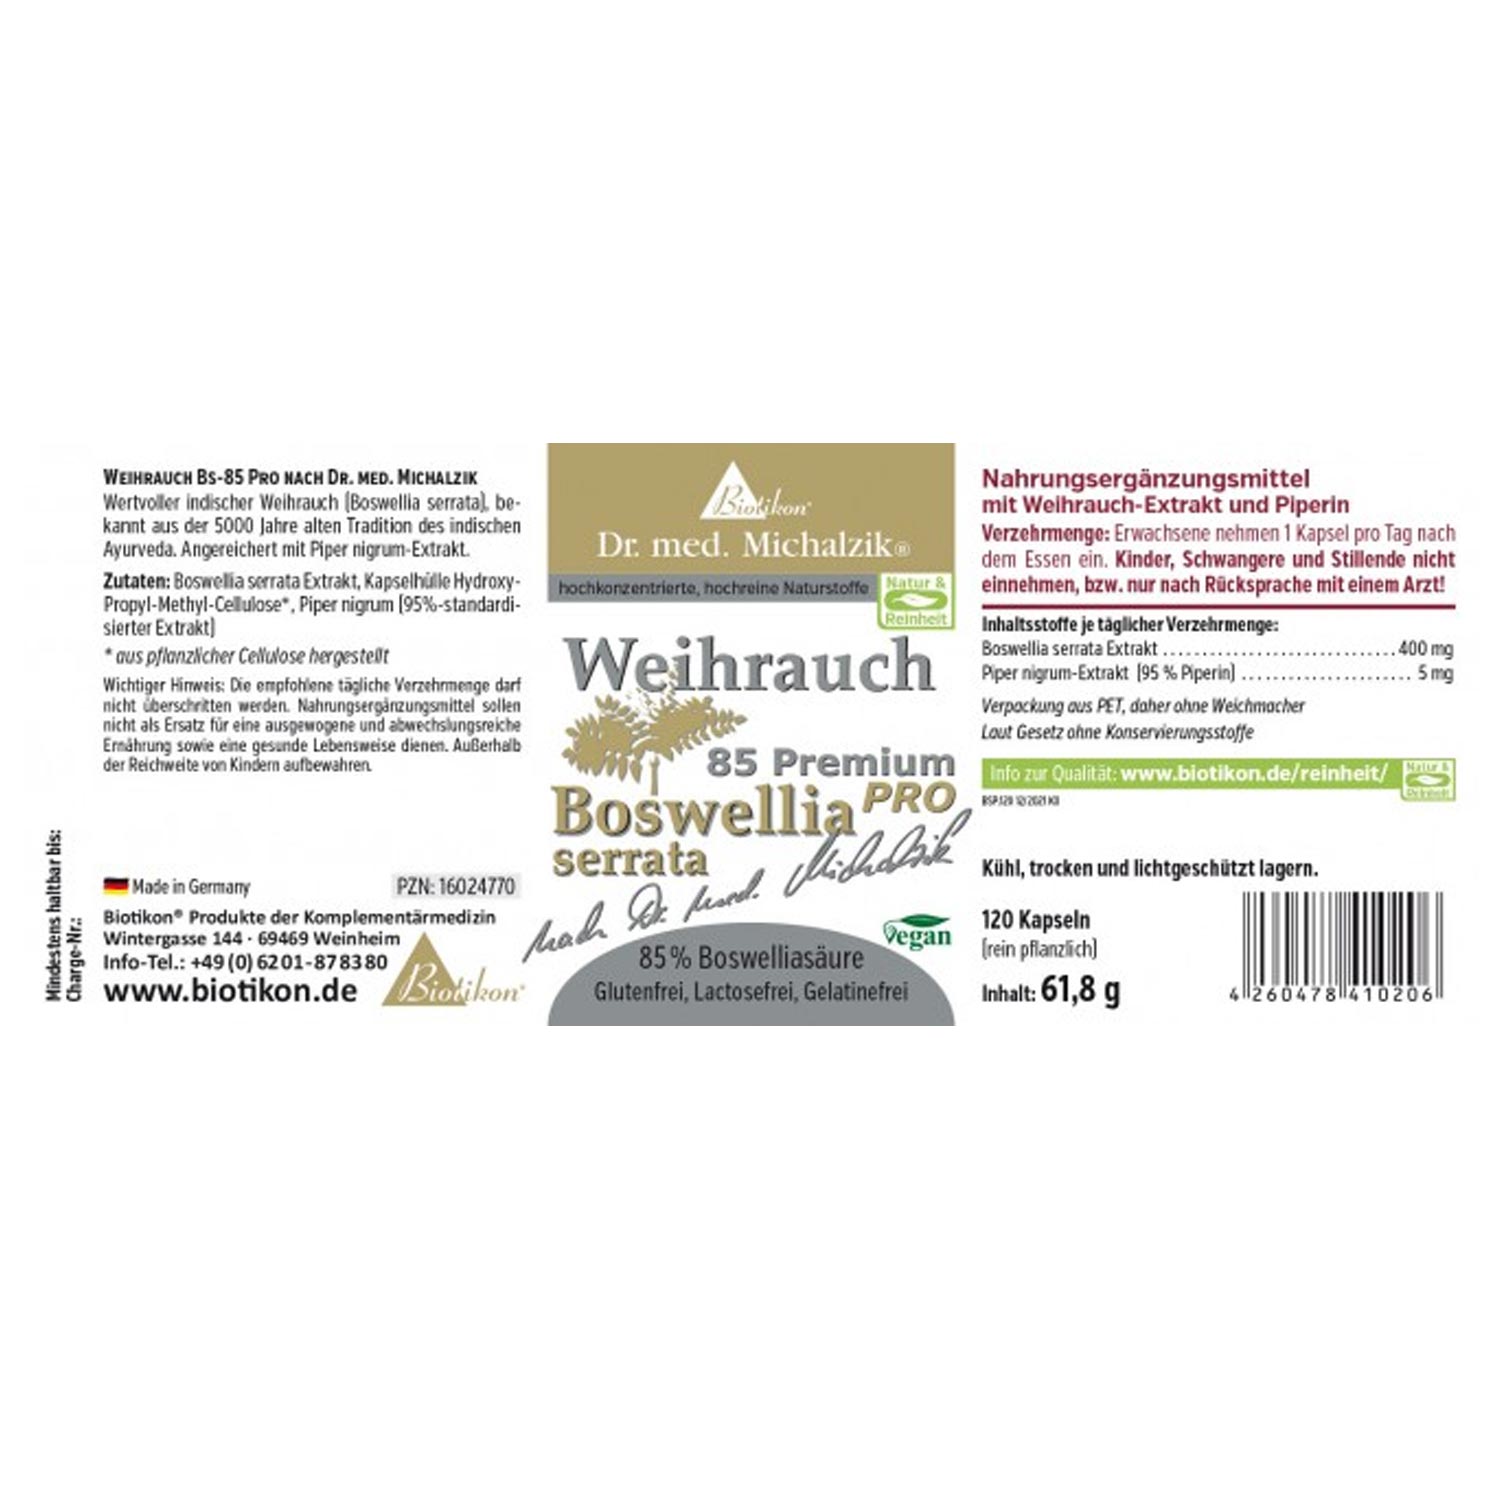 Weihrauch BS-85 PRO Piperin von Biotikon -Etikett